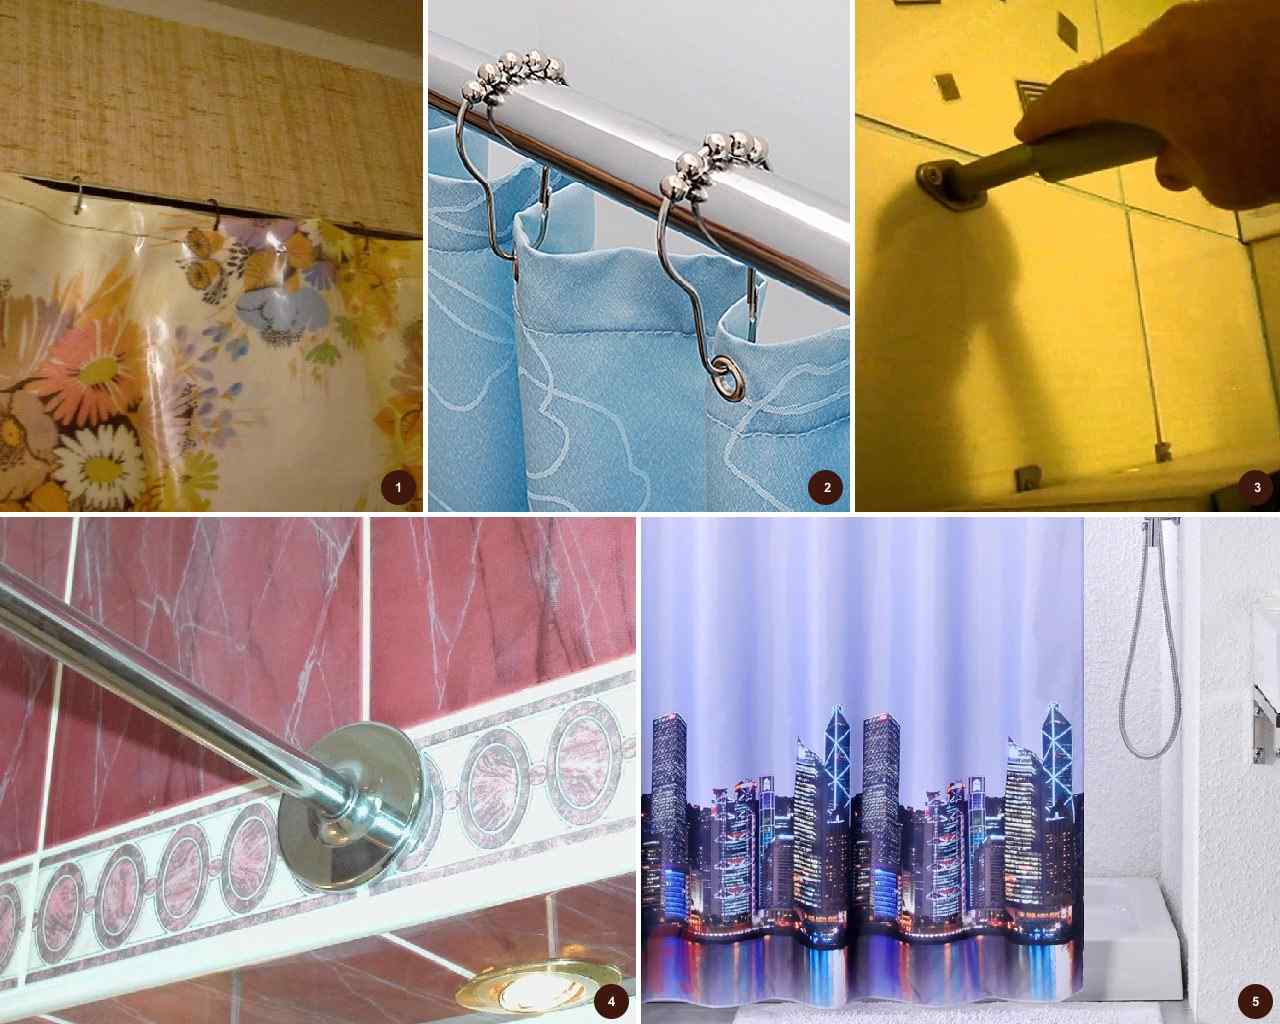 Как установить шторку для ванной - установка шторки в ванную комнату своими руками - vannayasvoimirukami.ru